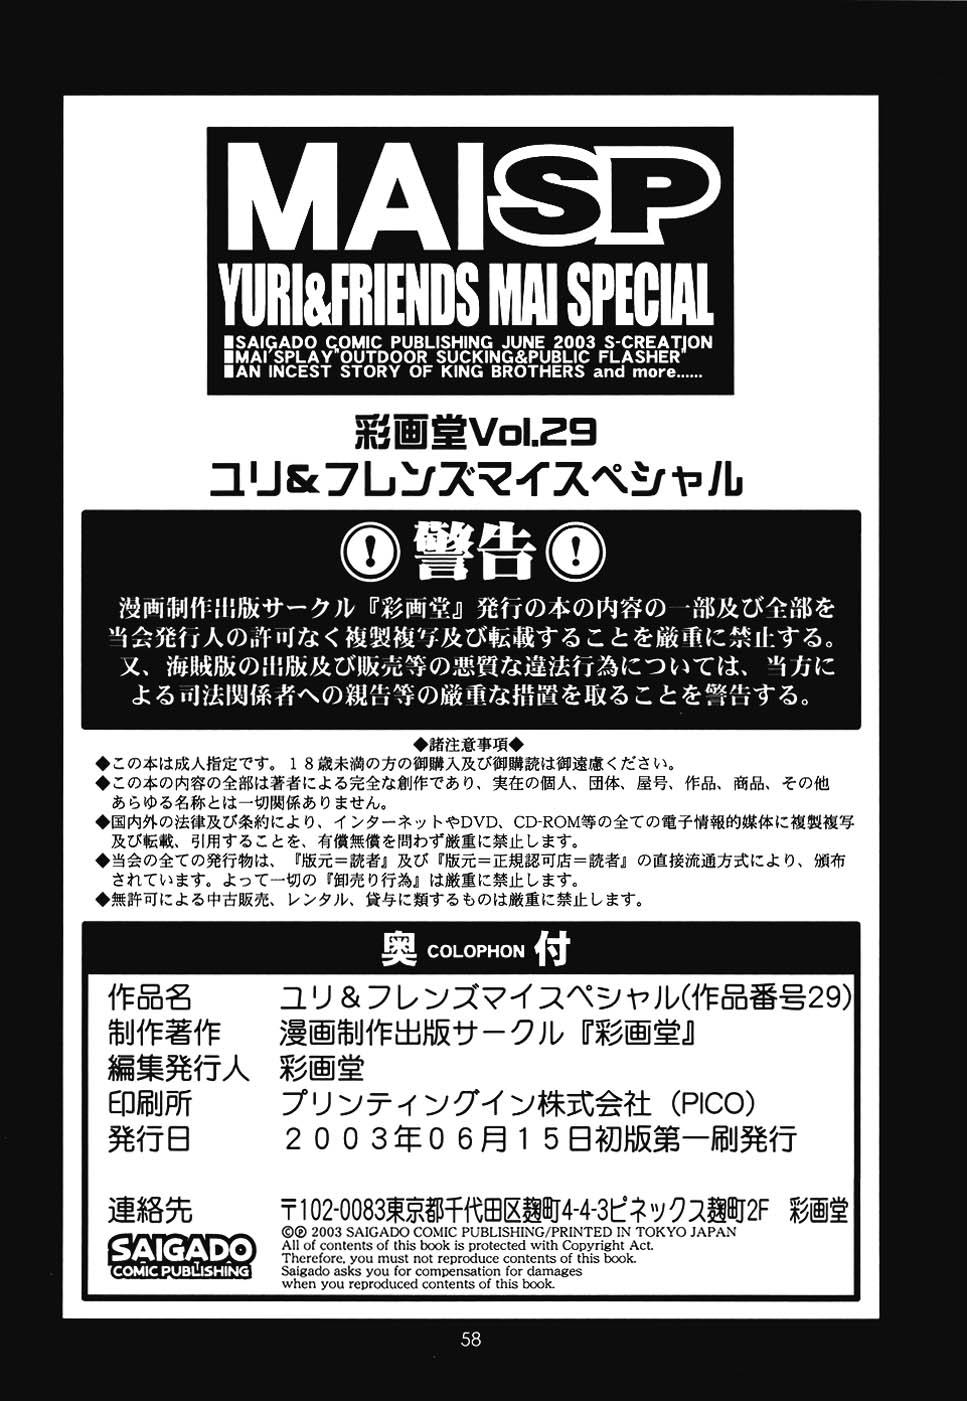 Yuri & Friends Mai Special 57